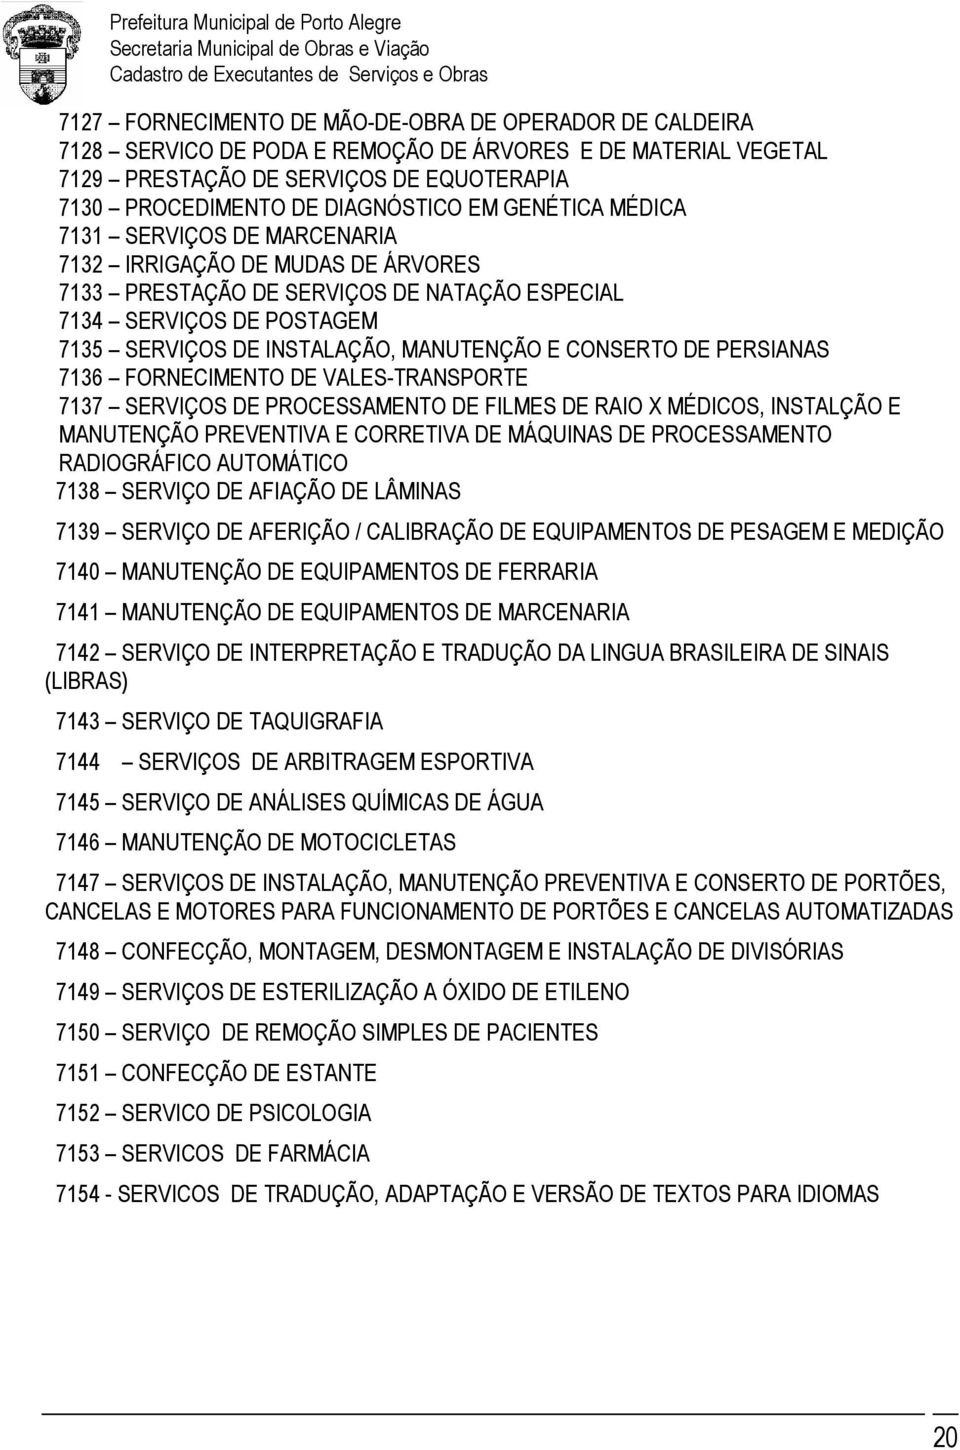 CONSERTO DE PERSIANAS 7136 FORNECIMENTO DE VALES-TRANSPORTE 7137 SERVIÇOS DE PROCESSAMENTO DE FILMES DE RAIO X MÉDICOS, INSTALÇÃO E MANUTENÇÃO PREVENTIVA E CORRETIVA DE MÁQUINAS DE PROCESSAMENTO